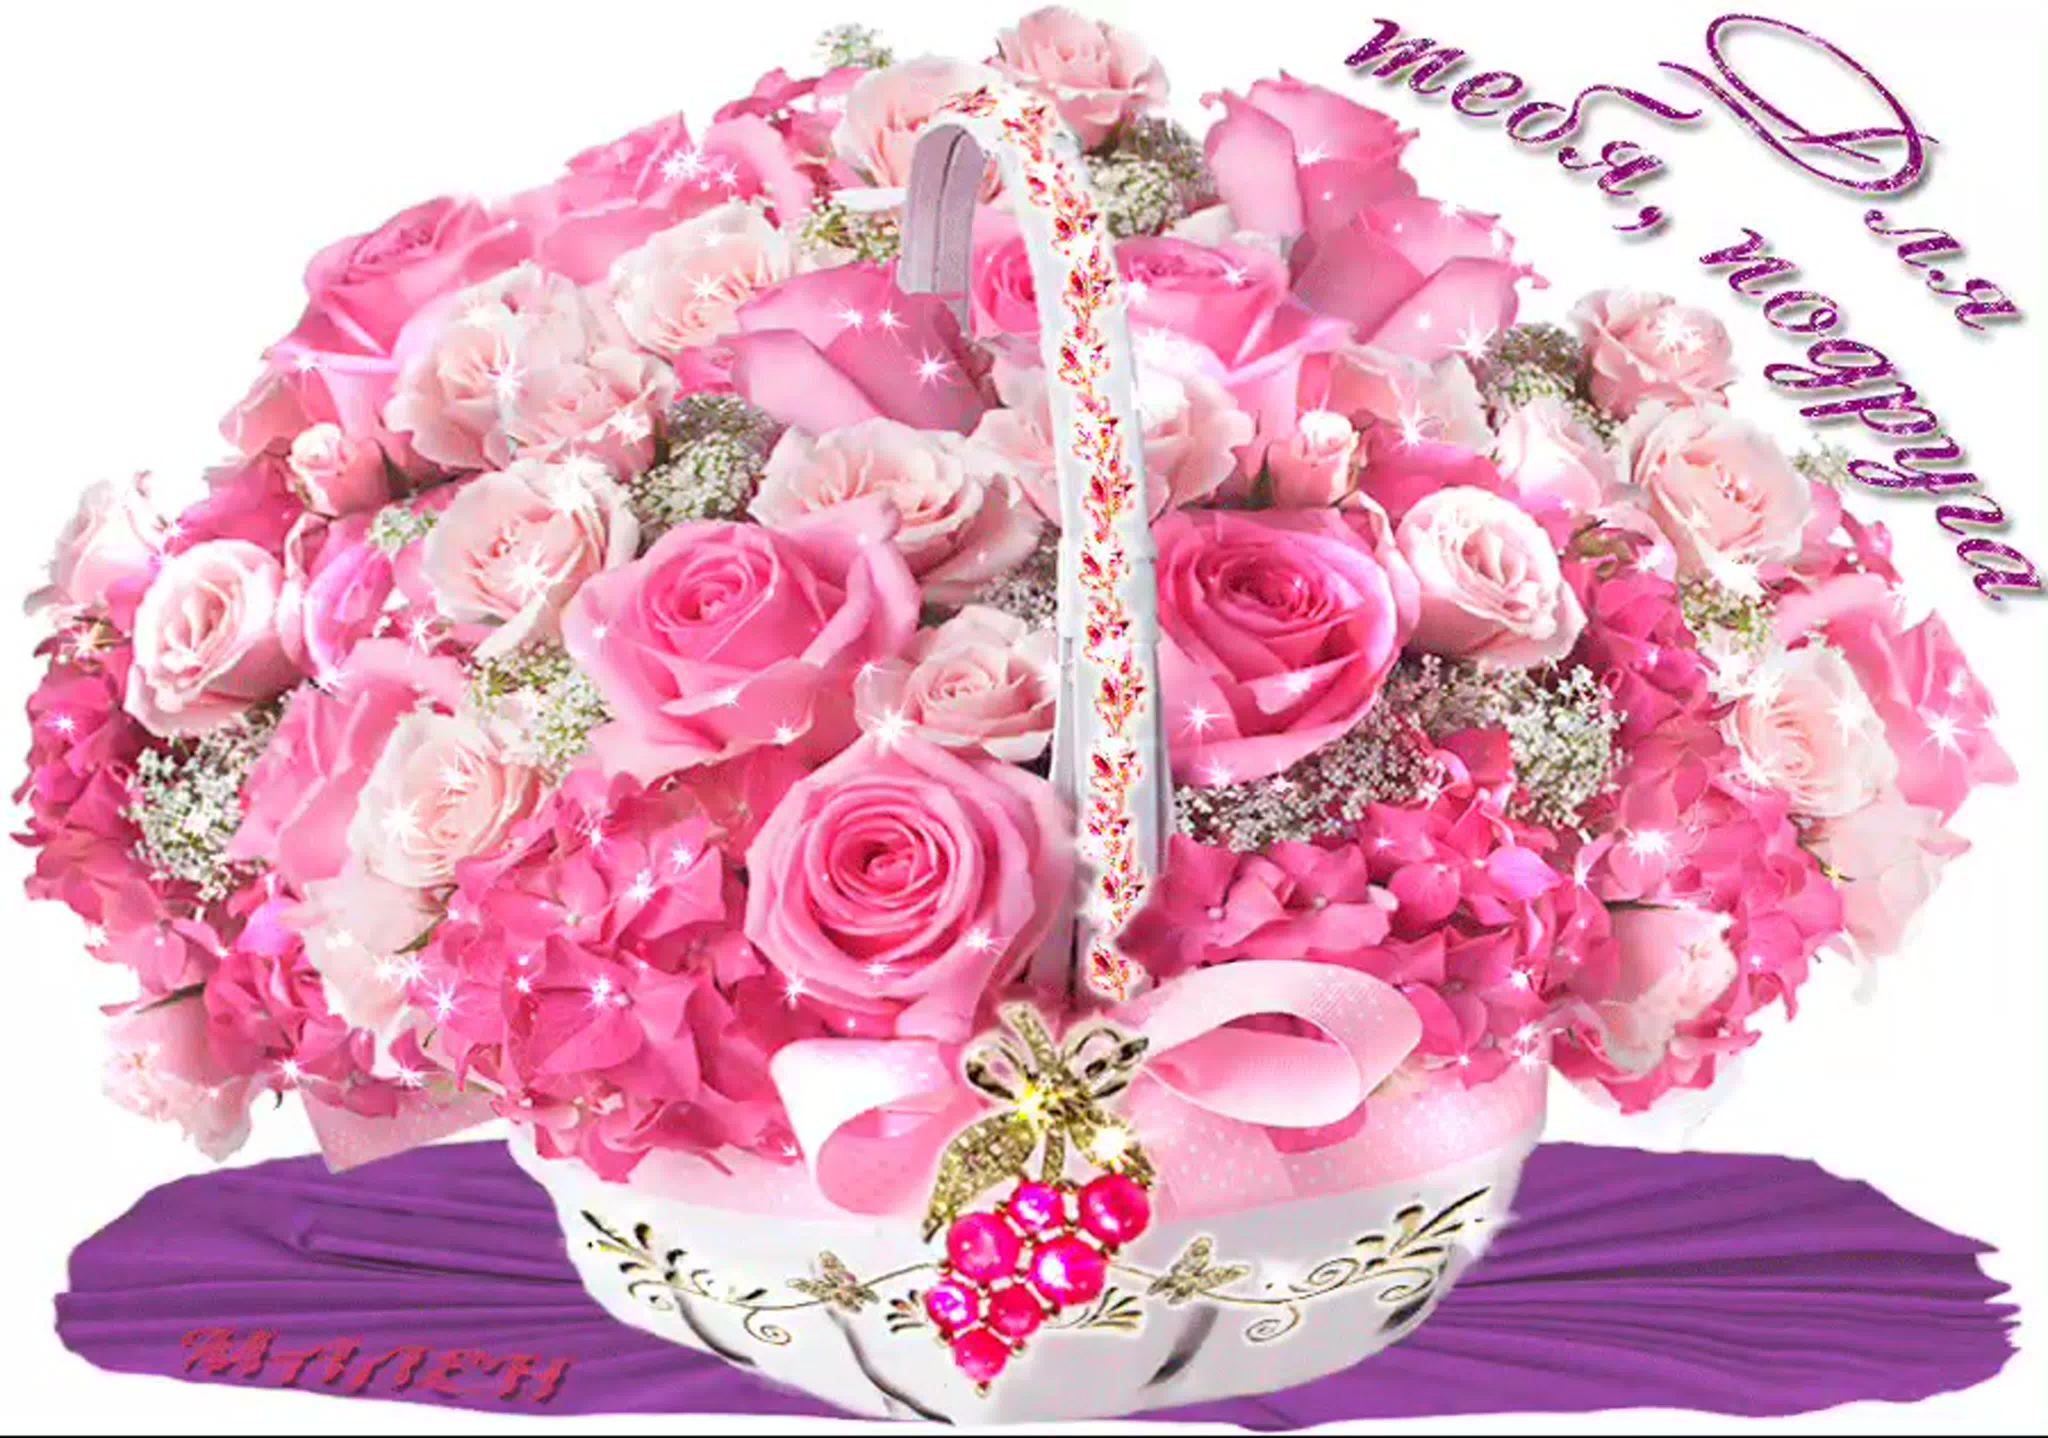 Фото с букетом цветов с днем рождения женщине красивые